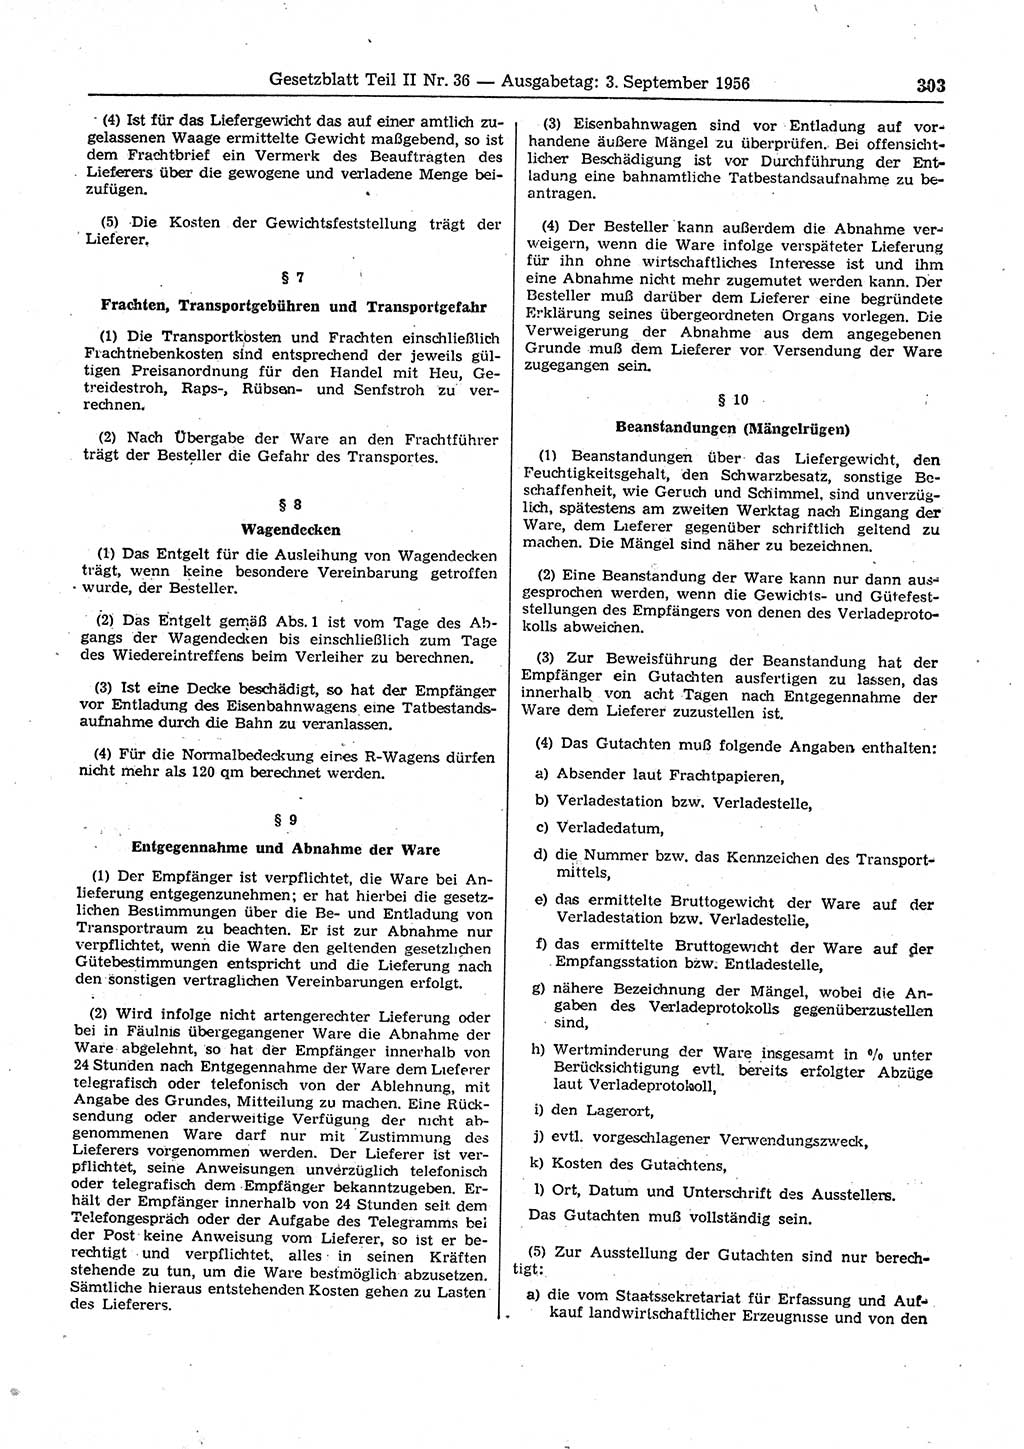 Gesetzblatt (GBl.) der Deutschen Demokratischen Republik (DDR) Teil ⅠⅠ 1956, Seite 303 (GBl. DDR ⅠⅠ 1956, S. 303)